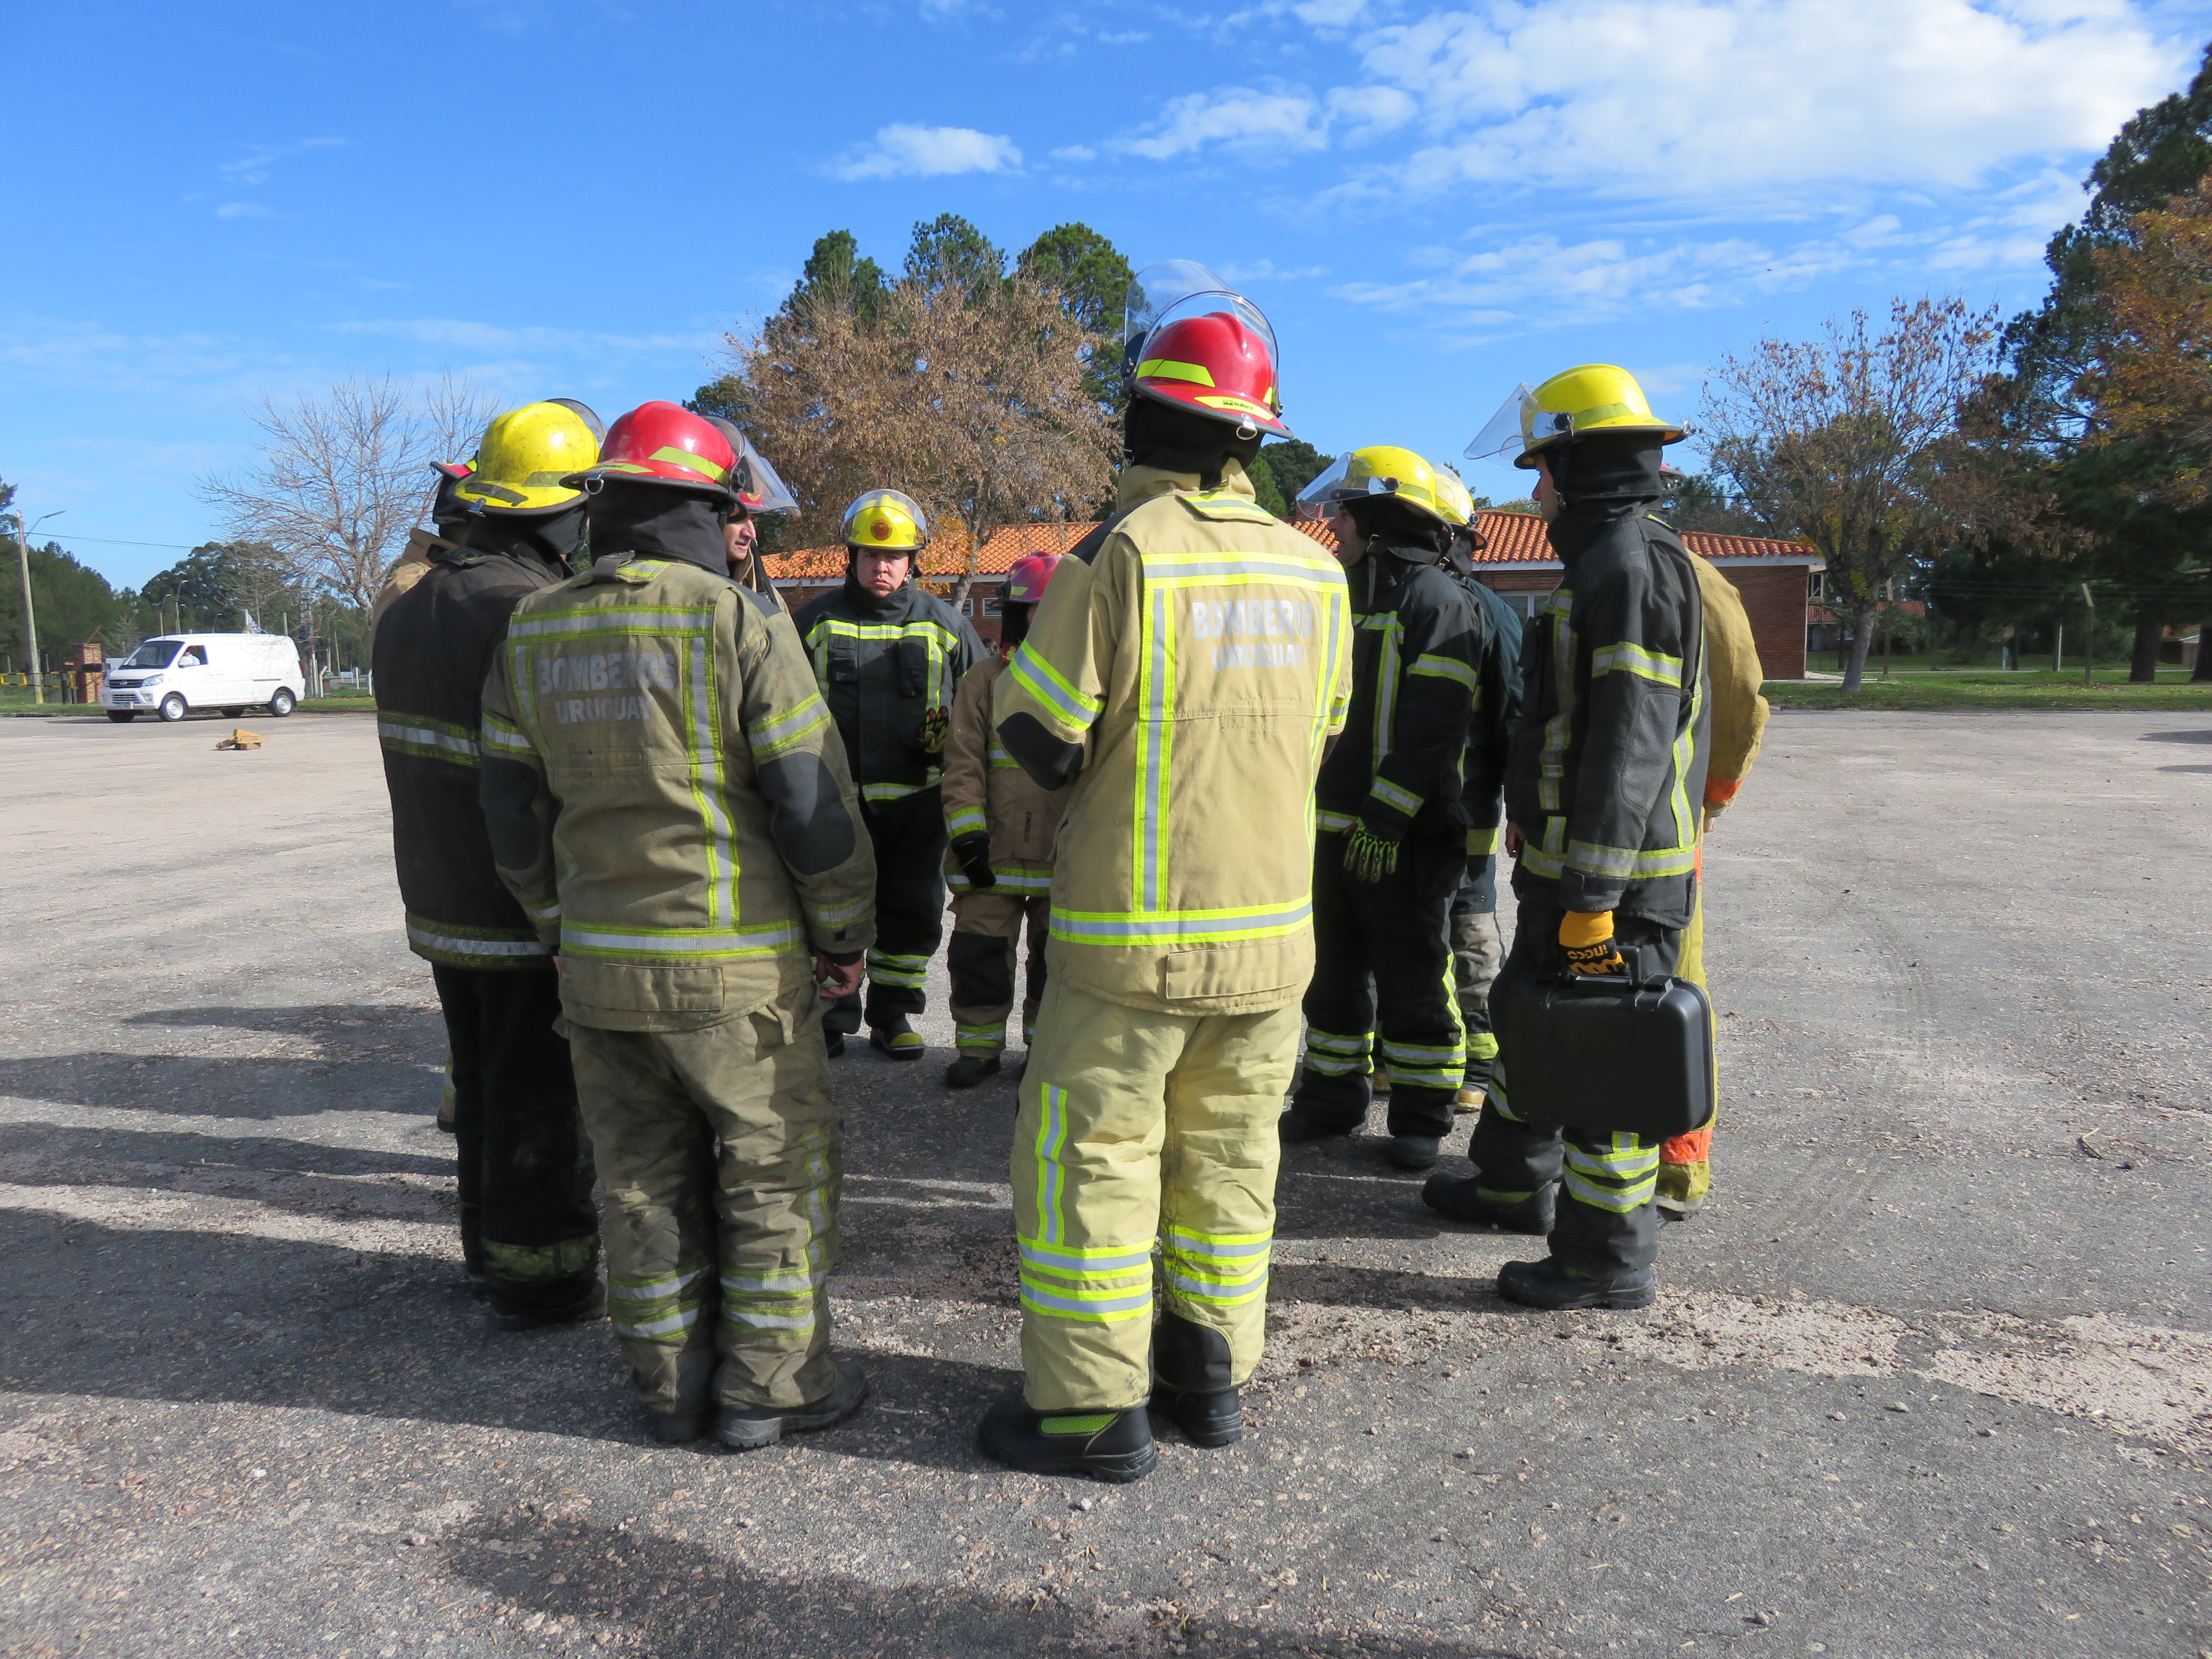 IMG_20230511_3783.jpg - El pasado jueves 11 de mayo culminó la &#034;Capacitación para bomberos sobre manejo de incidentes relacionados con la movilidad eléctrica&#034; en donde se capacitaron a 25 bomberos en la Base Aérea de Santa Bernardina del departamento de Durazno. Esta capacitación es la continuación del primer curso regional que organizó la plataforma MOVE del Programa de la Naciones Unidas para el Medio Ambiente a finales de 2022 en Paraguay, donde participaron y se formaron dos bomberos instructores de Uruguay.